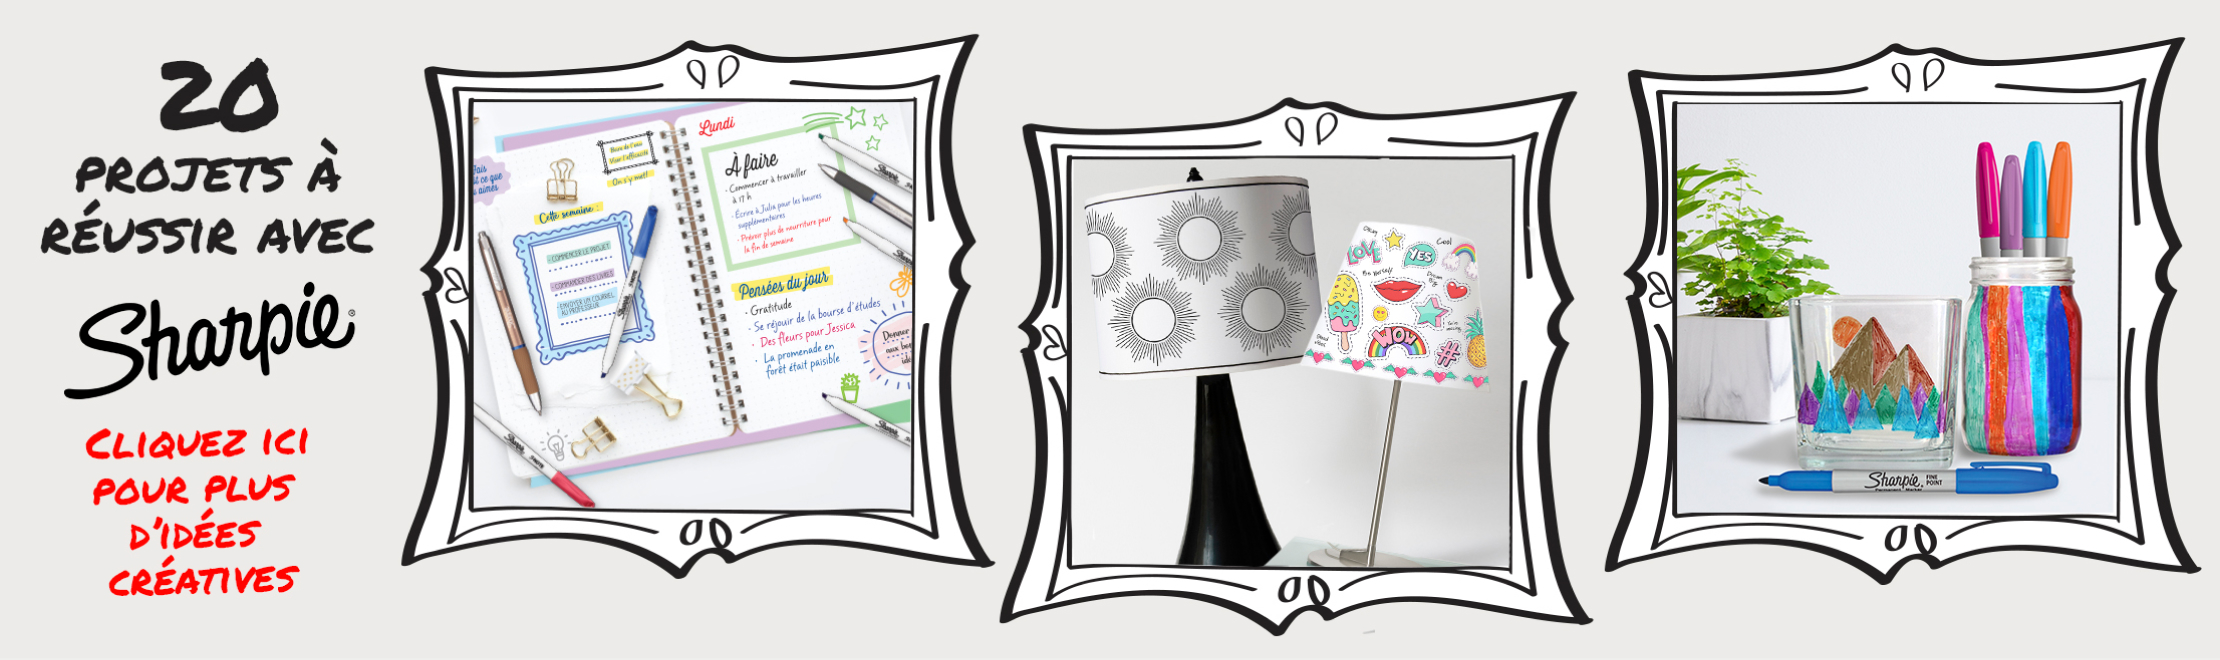 Bannière vous invitant à explorer '20 choses à créer avec Sharpie' par Staples Canada. Découvrez des idées et des projets créatifs utilisant les marqueurs Sharpie pour différentes surfaces.